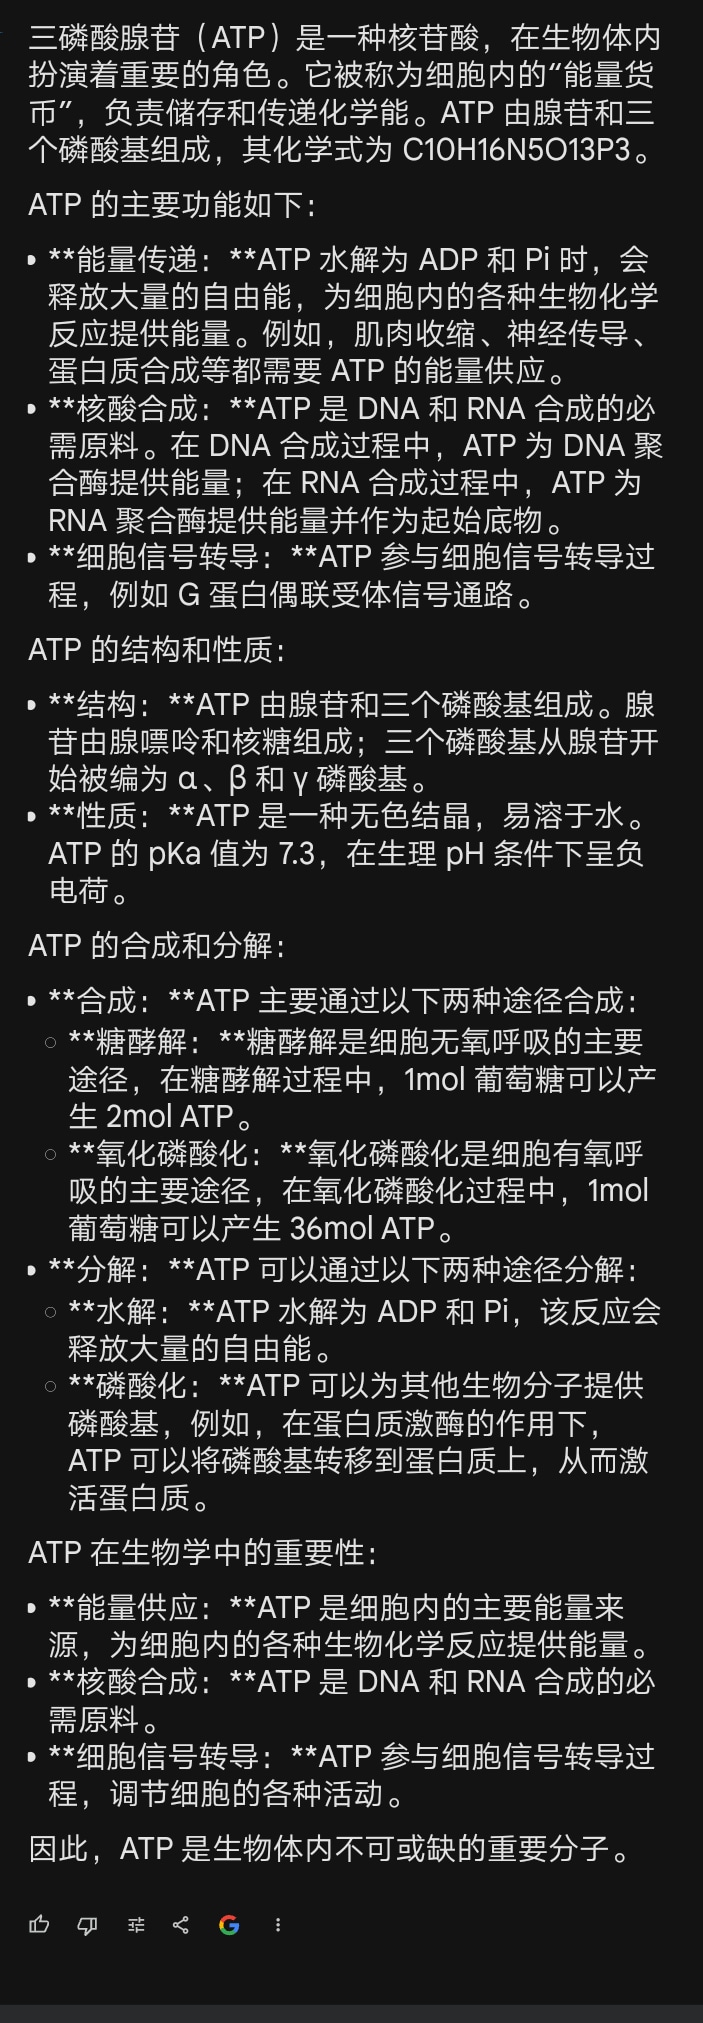 三磷酸腺苷（ATP）是一种核苷酸，在生物体内扮演着重要的角色。它被称为细胞内的“能量货币”，负责储存和传递化学能。ATP 由腺苷和三个磷酸基组成，其化学式为 C10H16N5O13P3。

ATP 的主要功能如下：

**能量传递：**ATP 水解为 ADP 和 Pi 时，会释放大量的自由能，为细胞内的各种生